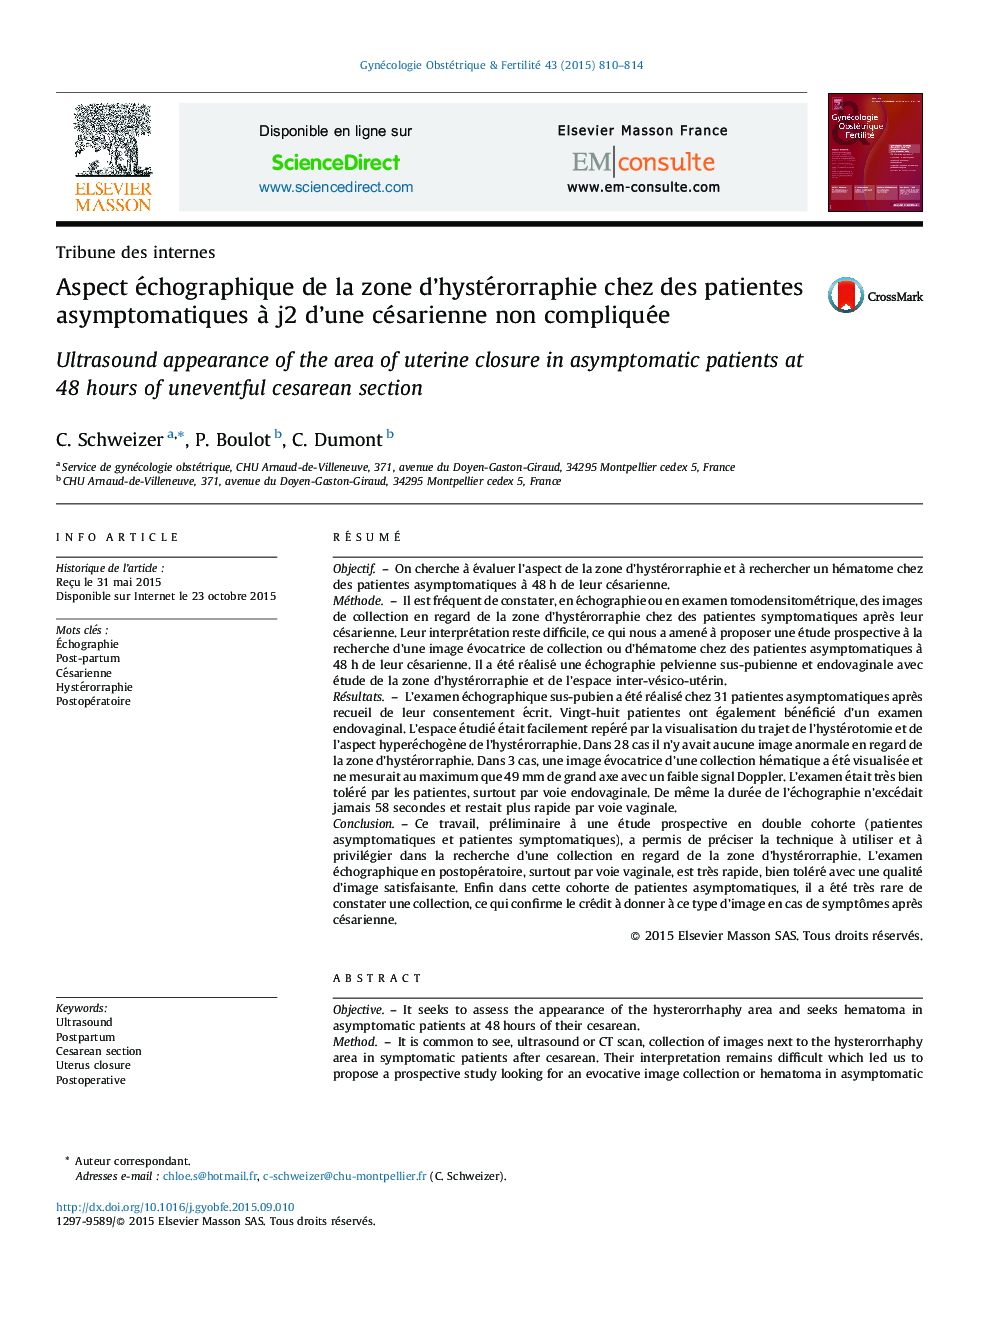 Aspect échographique de la zone d’hystérorraphie chez des patientes asymptomatiques à j2 d’une césarienne non compliquée